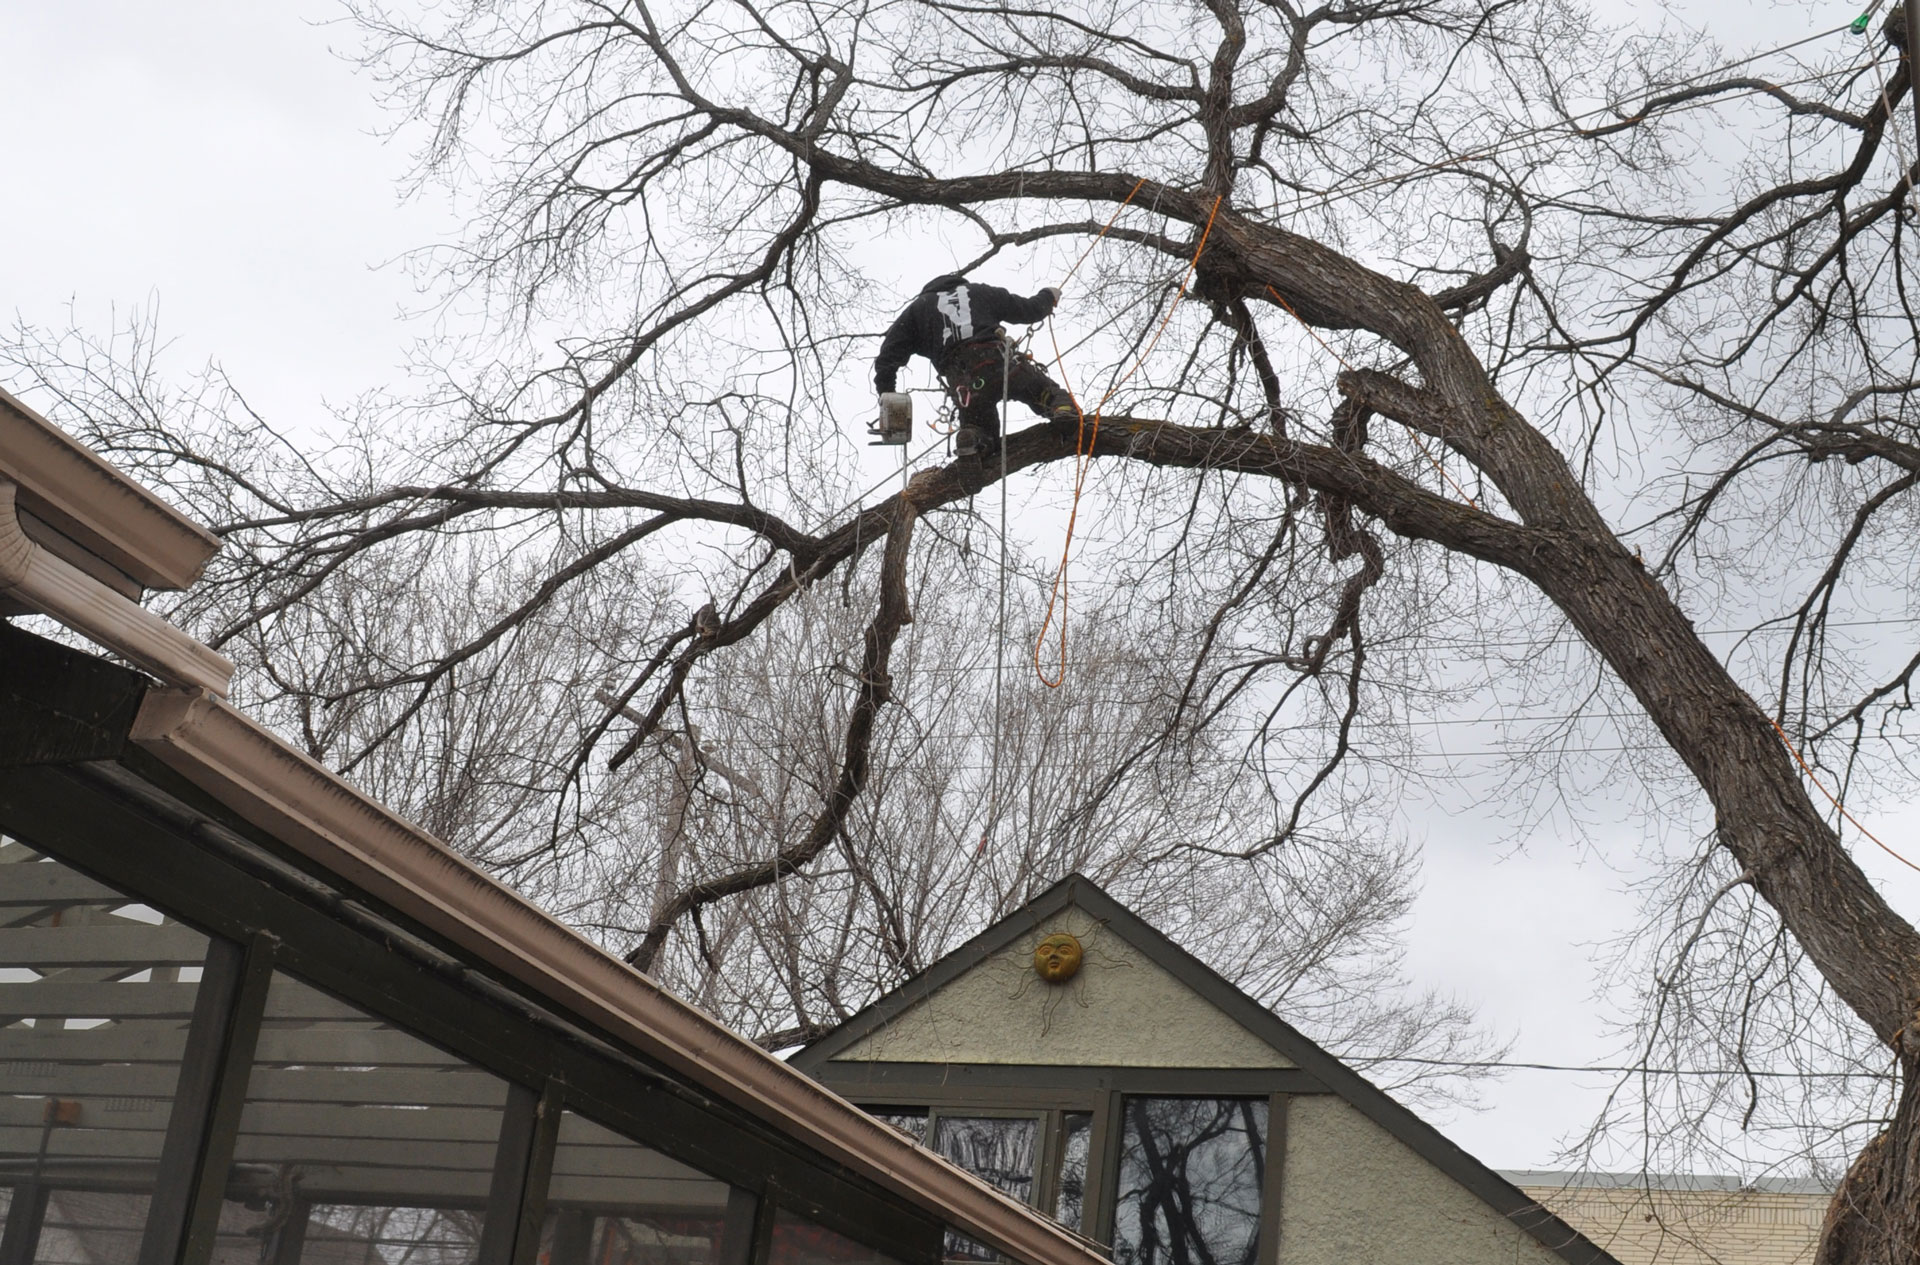 climbing tree to remove limb